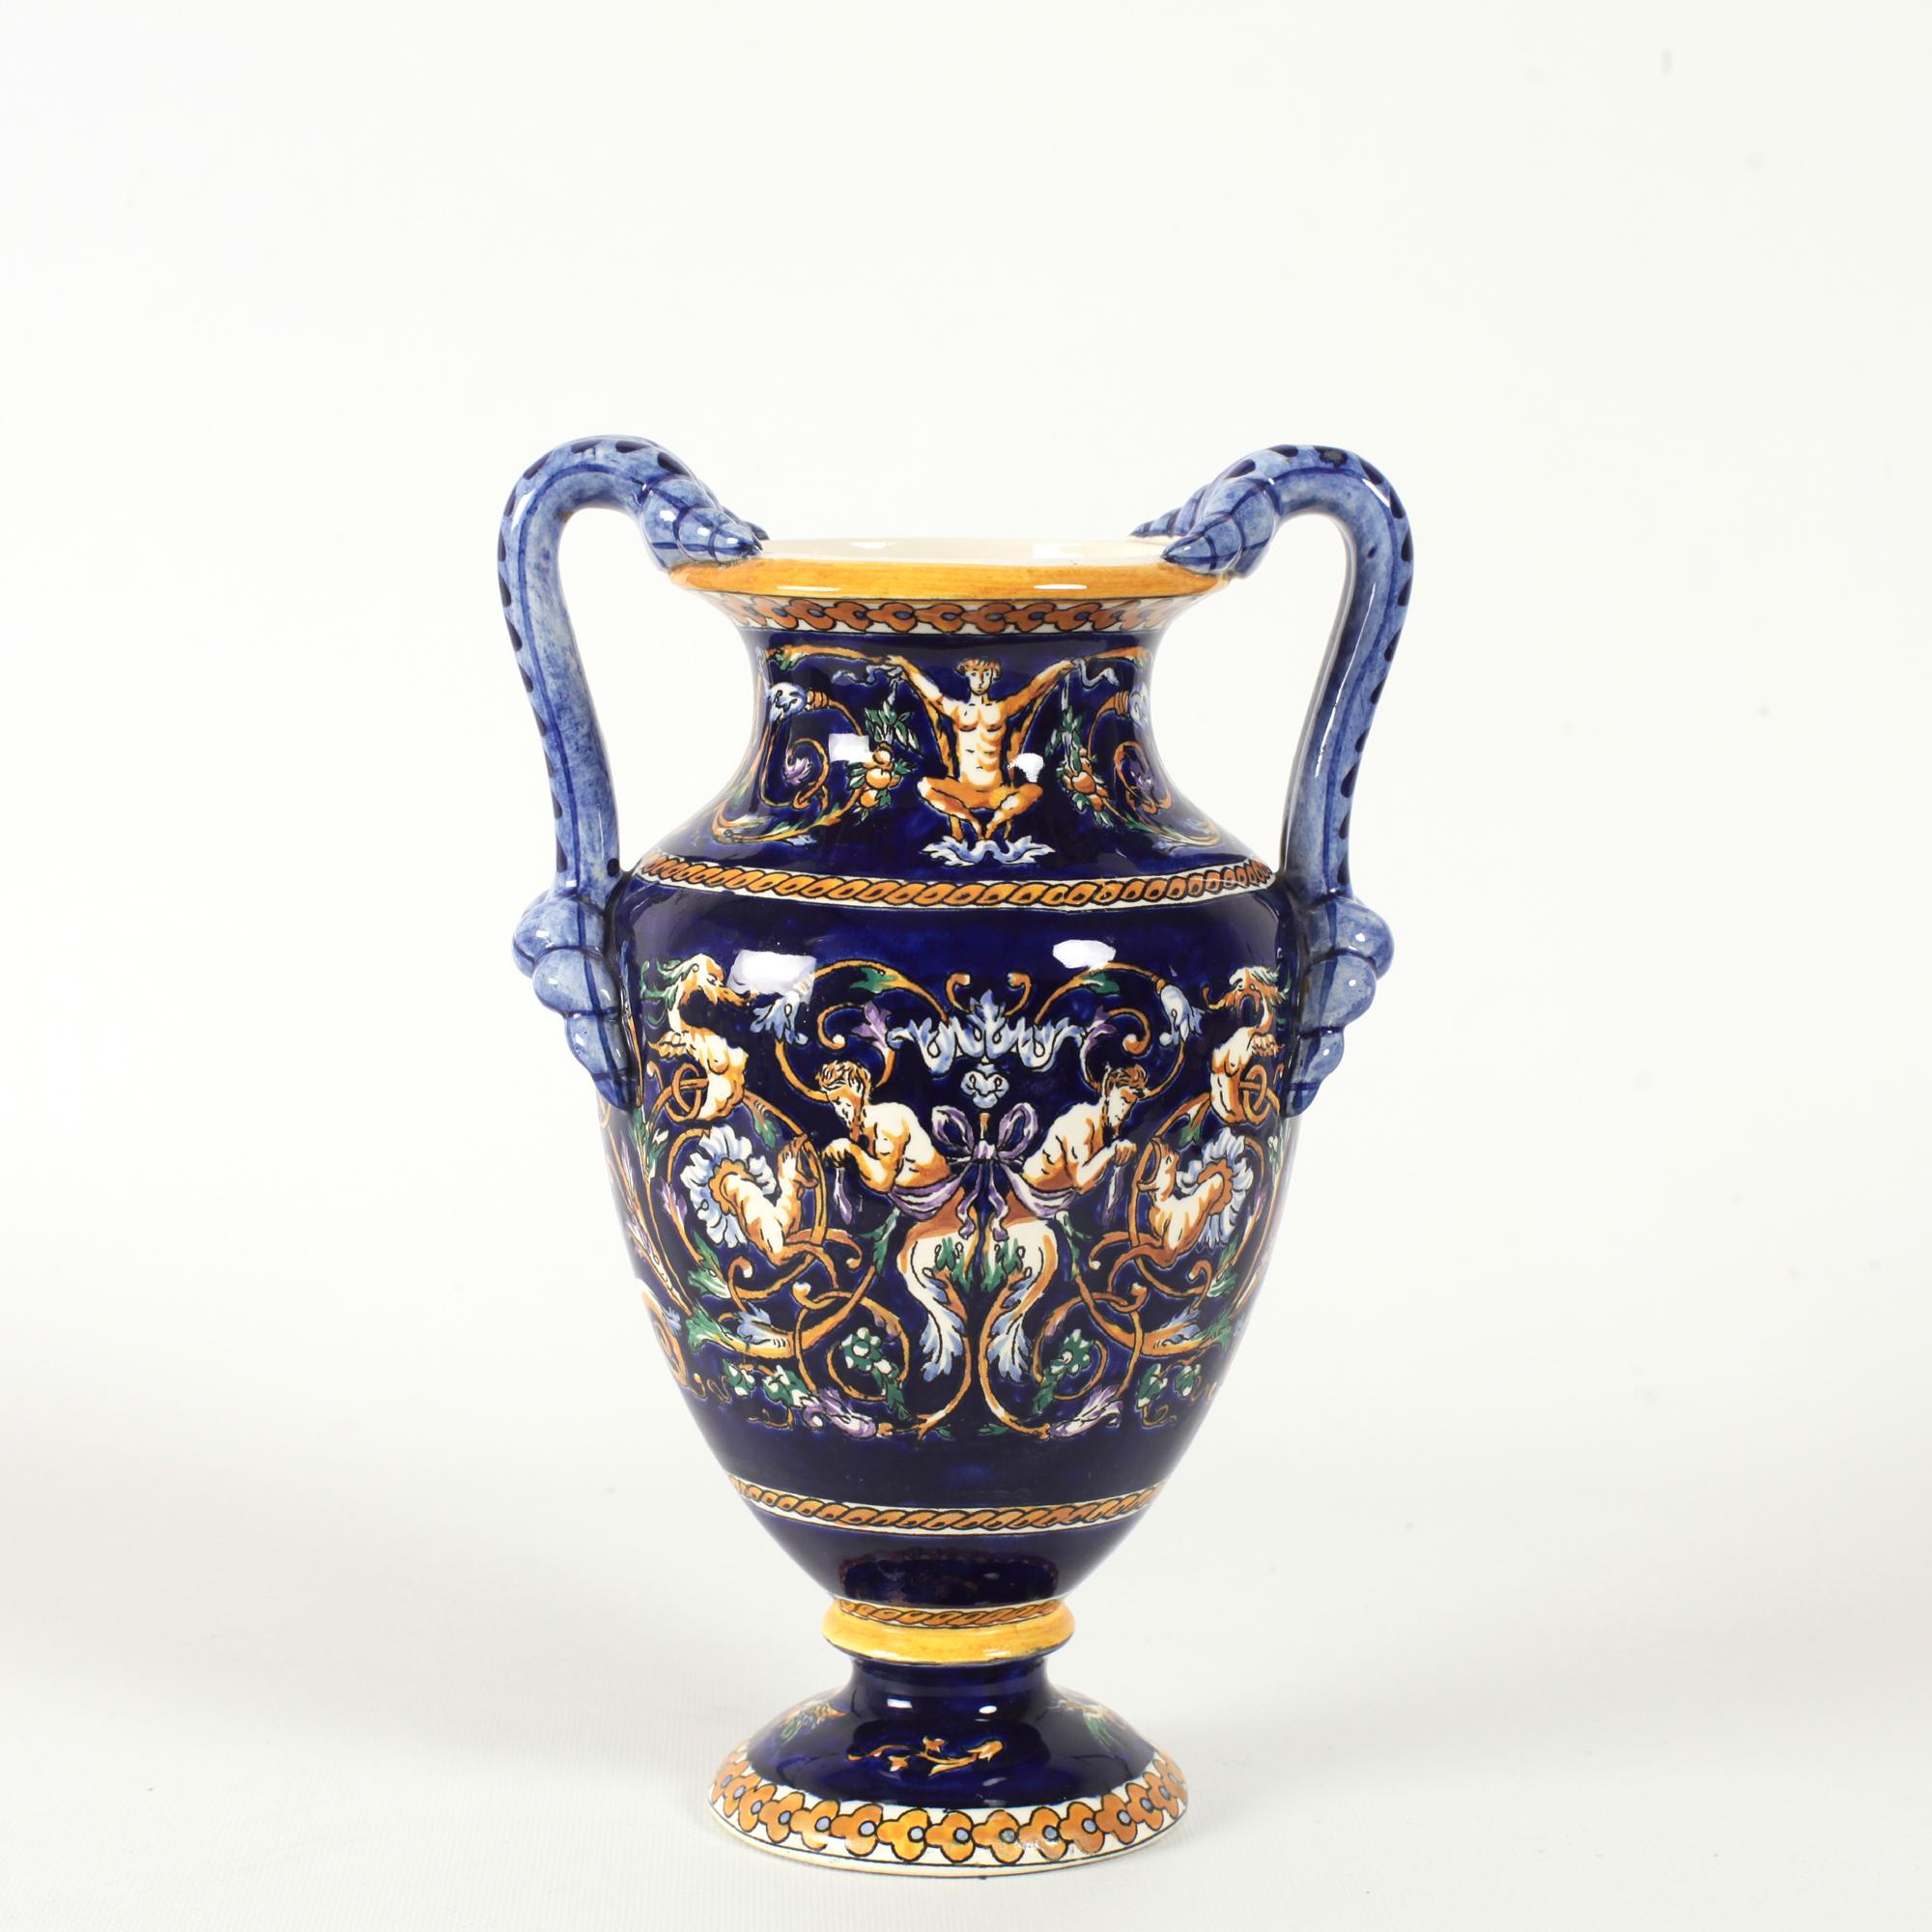 Le vase Eleg est de forme ronde et repose sur une base circulaire avec un fond bleu cobalt pour des décorations grotesques peintes à la main, inspirées de l'Italie du XVe siècle. Les motifs aux reflets jaunes, blancs et bruns représentent des